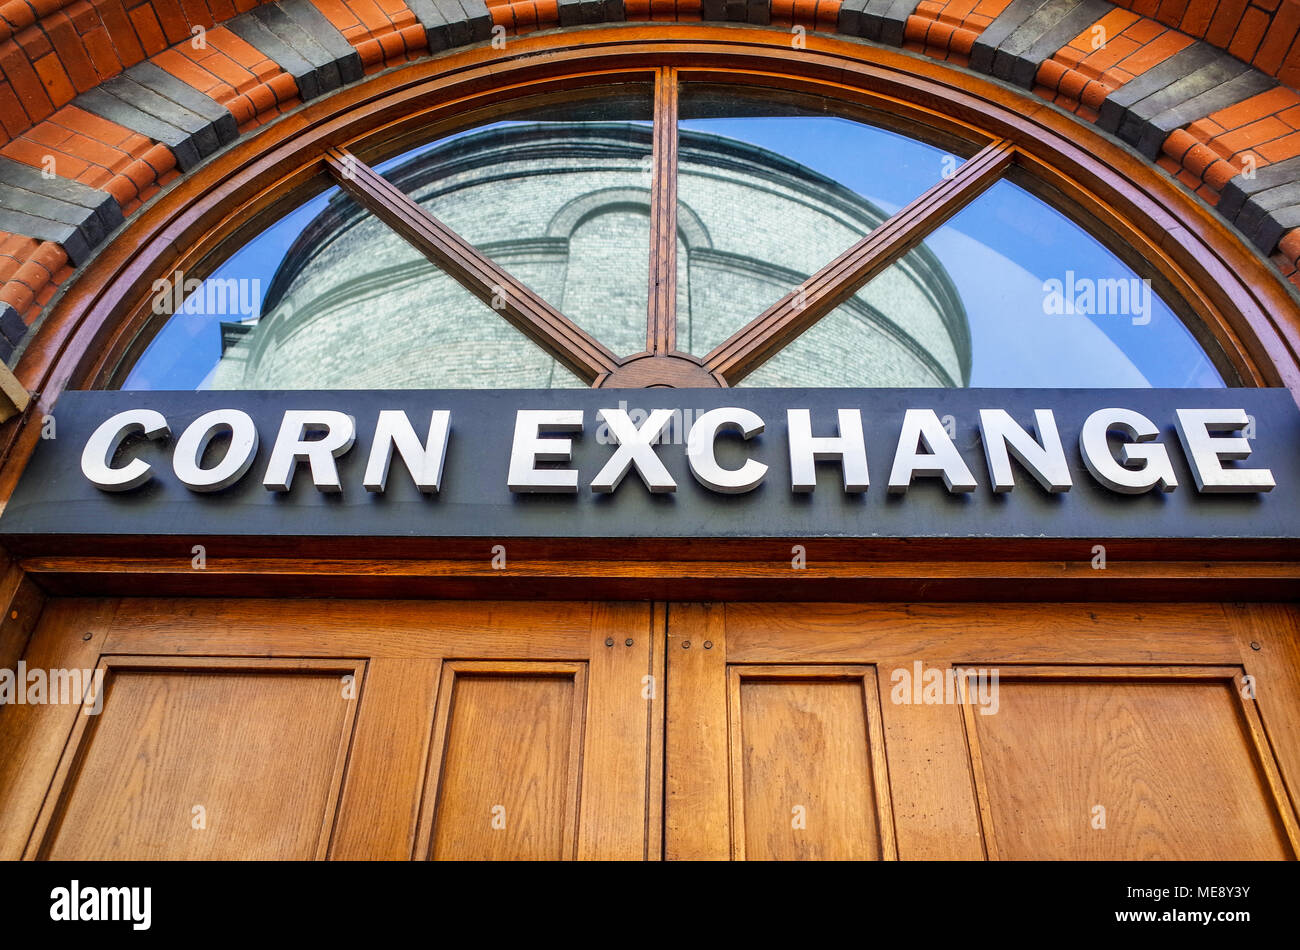 Cambridge Corn Exchange affiche de porte - the Corn Exchange est un concert et evénements lieu dans le centre de Cambridge UK, ouvert en 1875 Banque D'Images